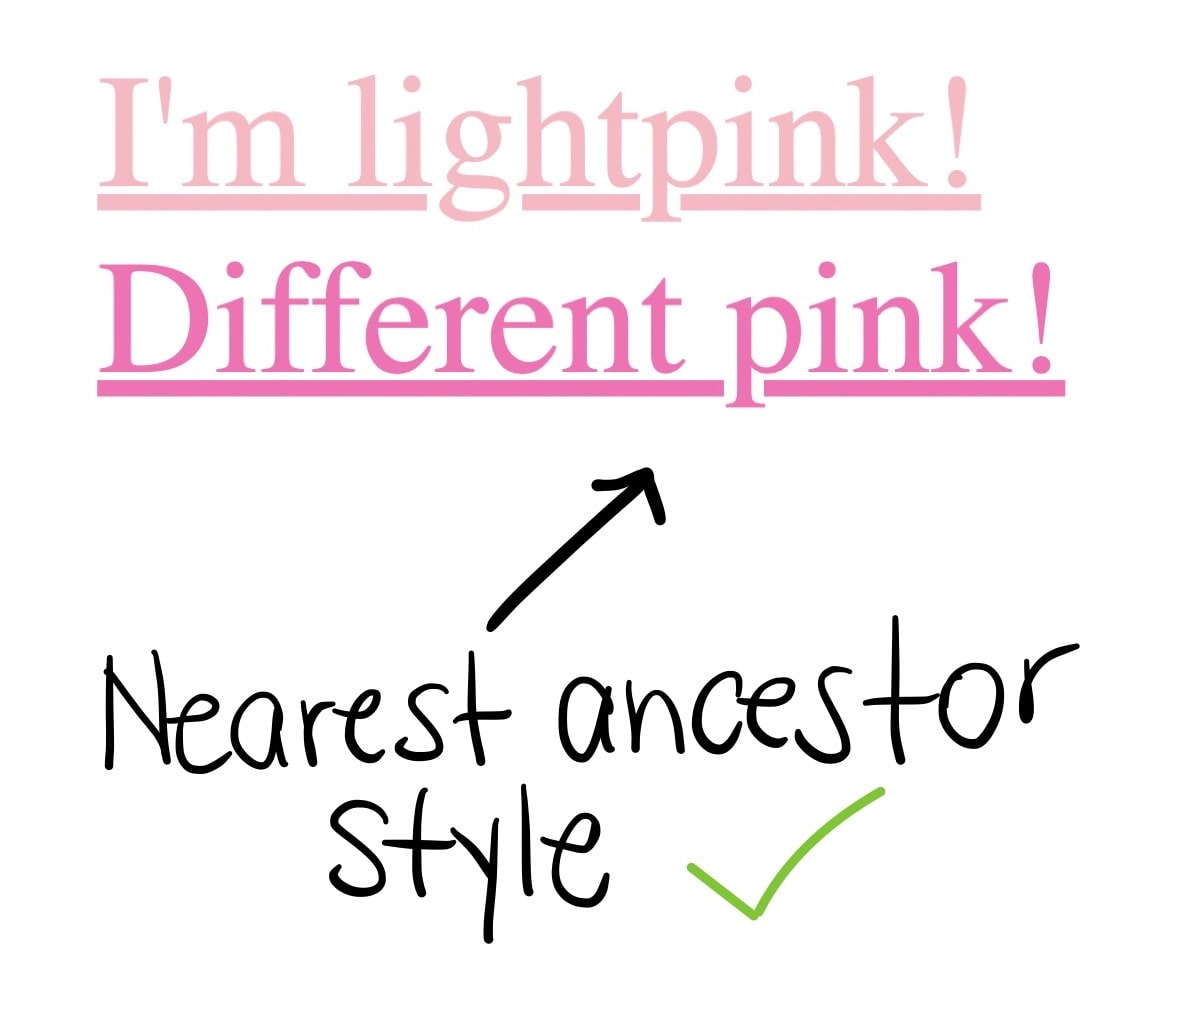 兩個連結，第一個是「我很好！」，第二項則顯示為「不同粉紅色」，第二個連結為較深的粉紅色，位於最接近的上階樣式下方，旁邊有一個綠色勾號。